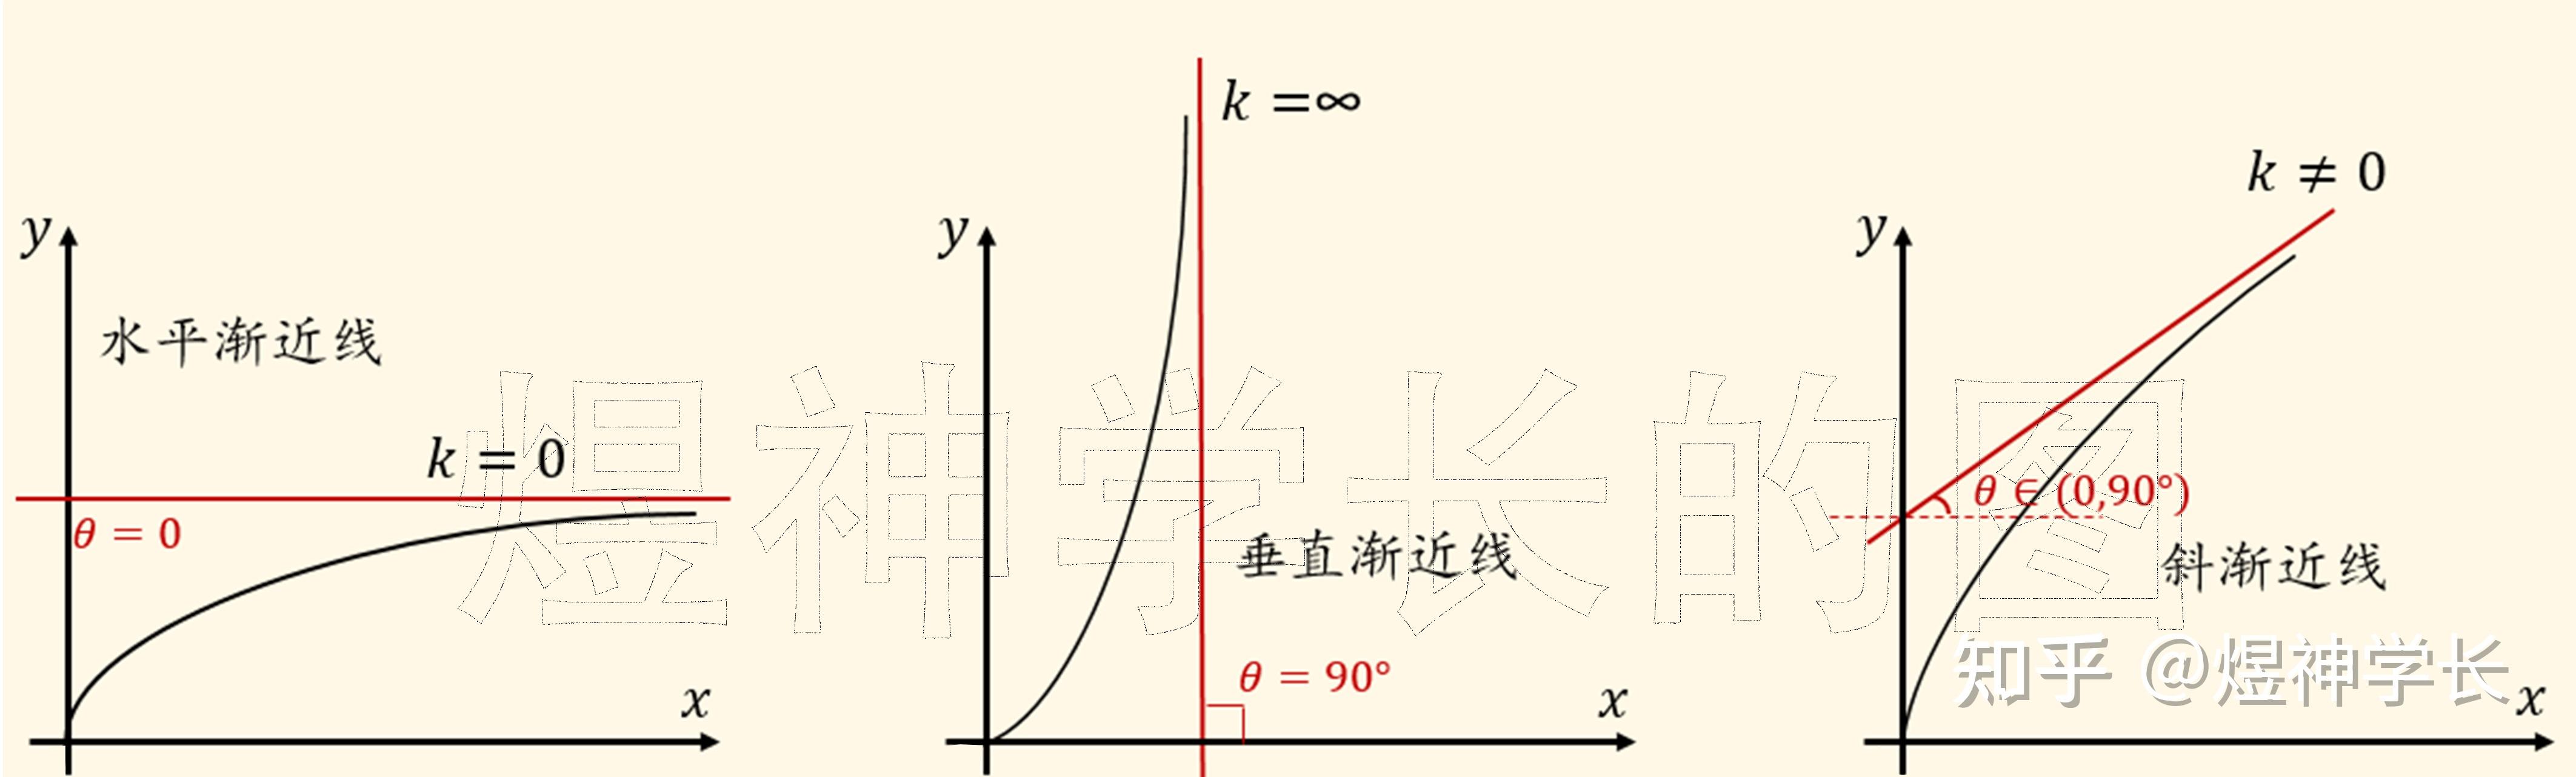 考研数学:极限思维通俗解析水平/垂直/斜渐近线!